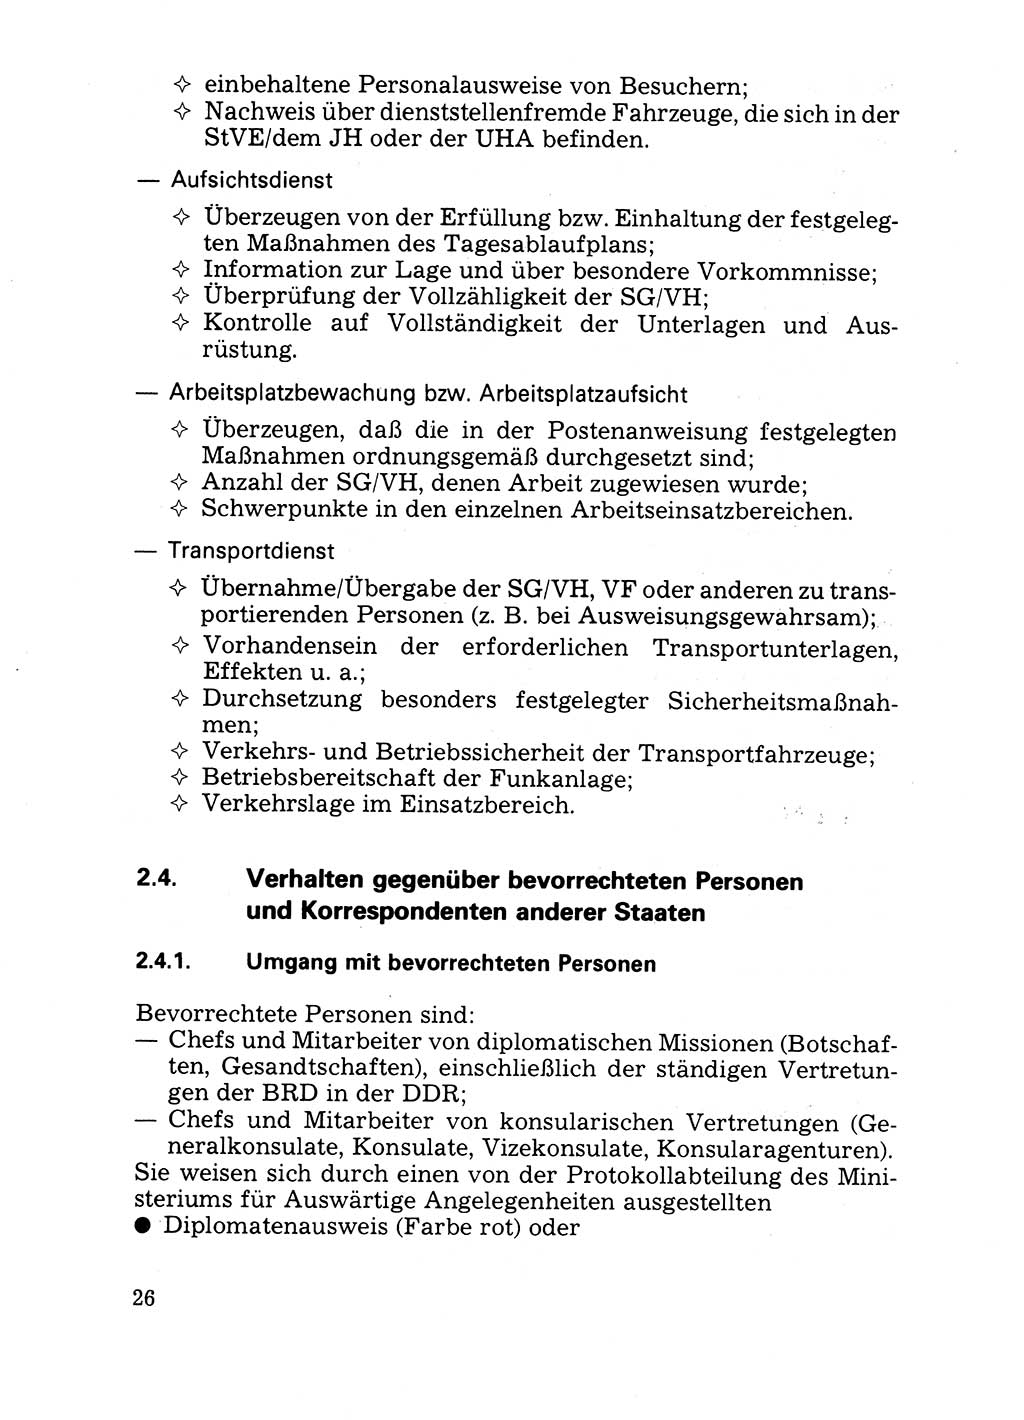 Handbuch für operative Dienste, Abteilung Strafvollzug (SV) [Ministerium des Innern (MdI) Deutsche Demokratische Republik (DDR)] 1981, Seite 26 (Hb. op. D. Abt. SV MdI DDR 1981, S. 26)